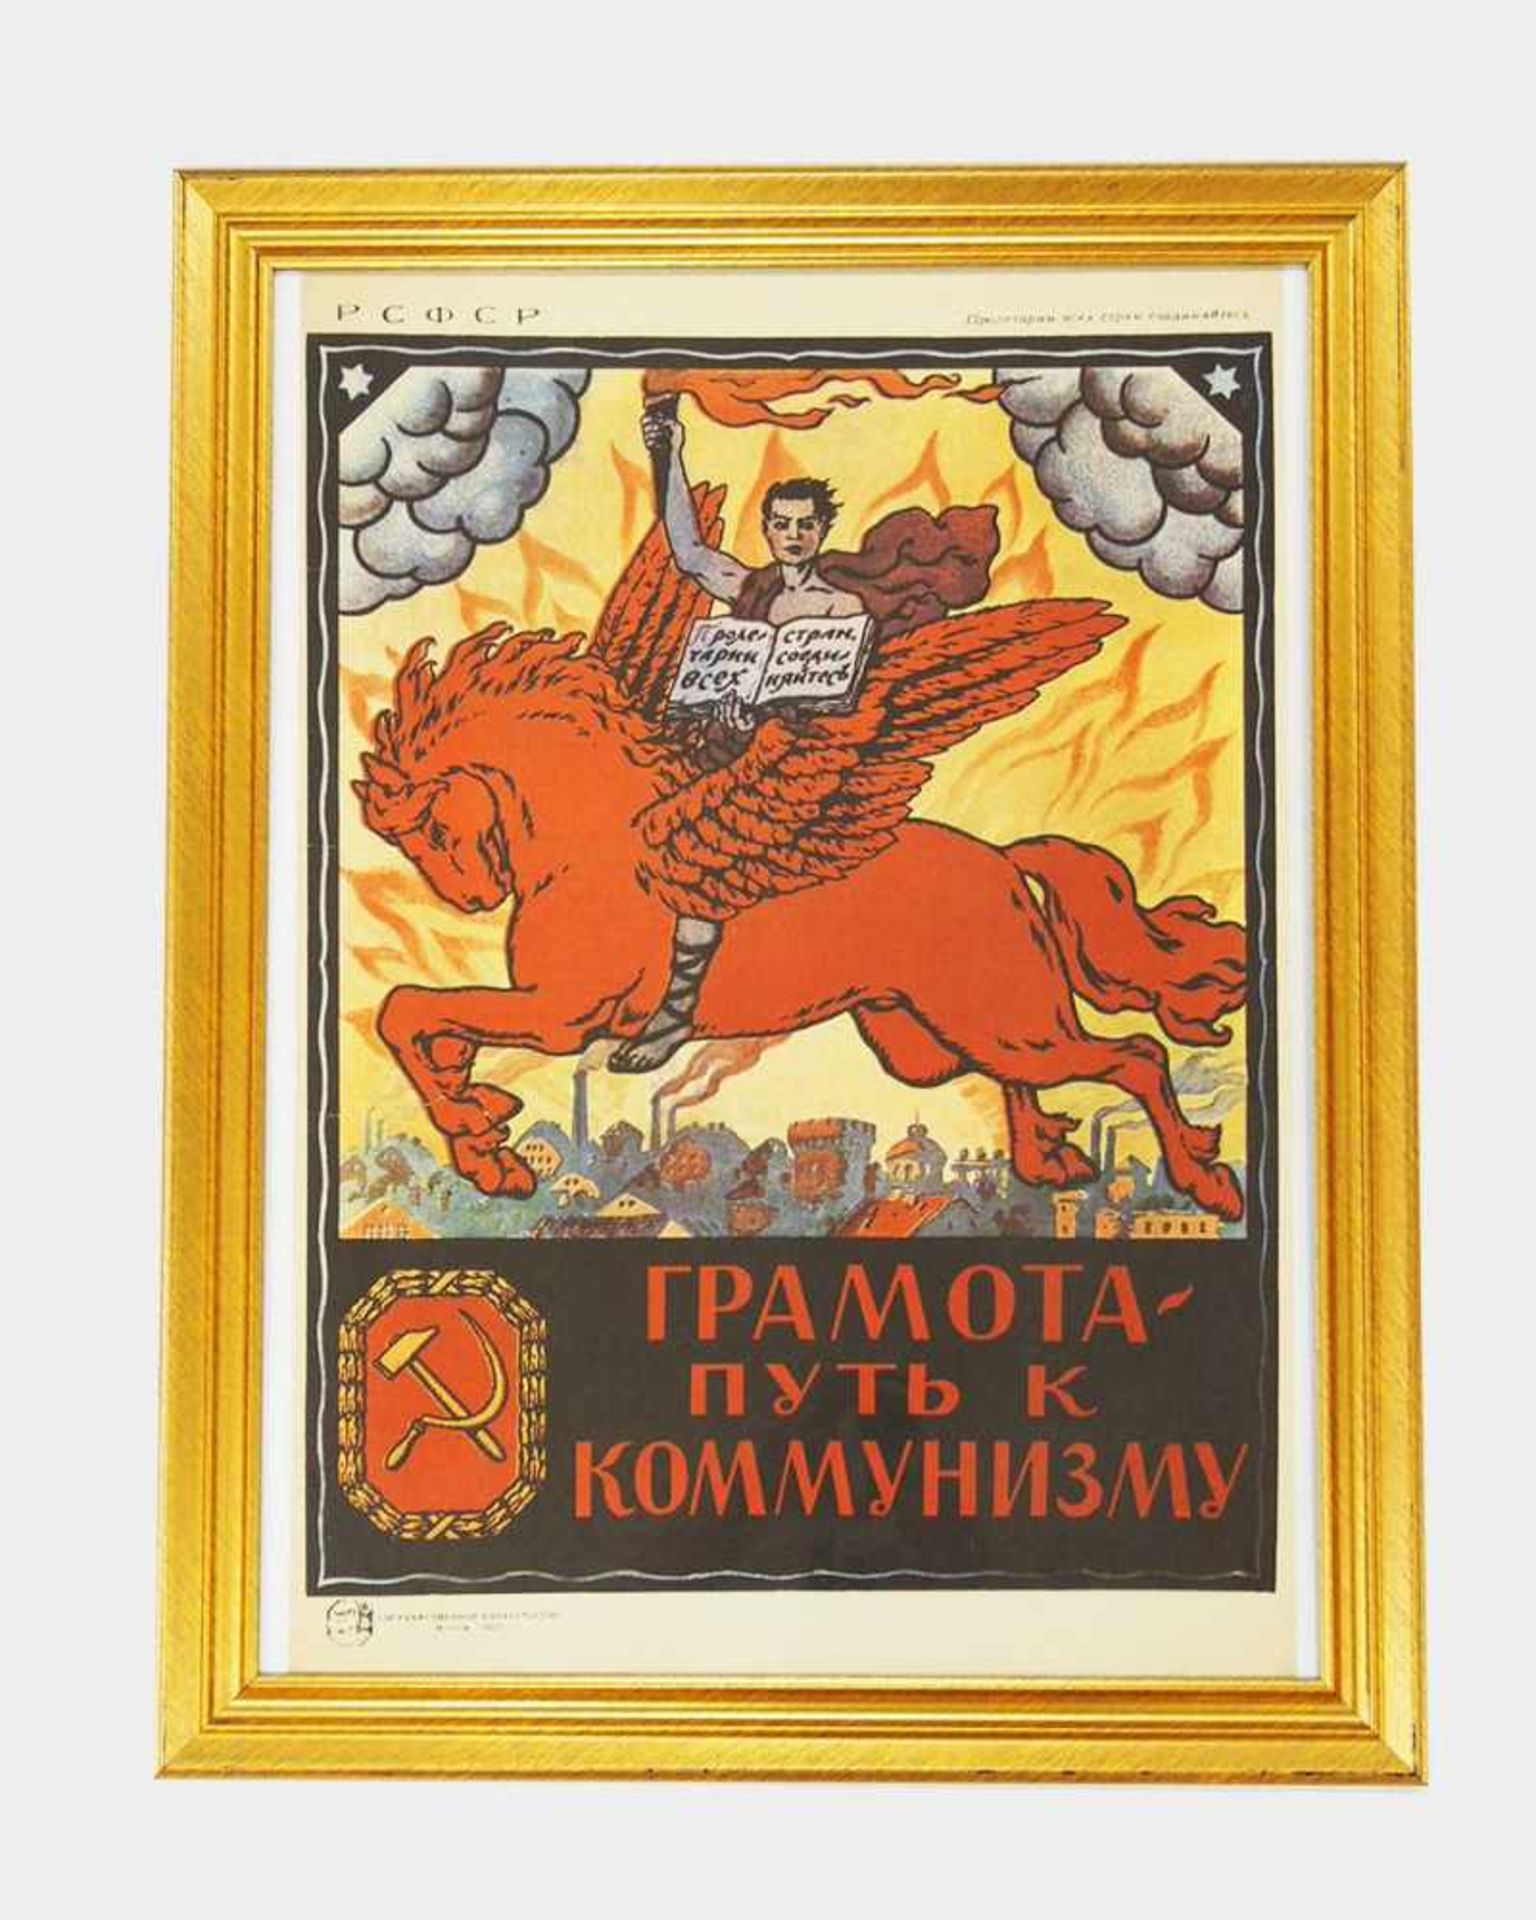 Plakat "Bildung ist ein Weg zum Kommunismus"Farboffset, dat. 1920 (2. Ausgabe), 67 x 47 cm,